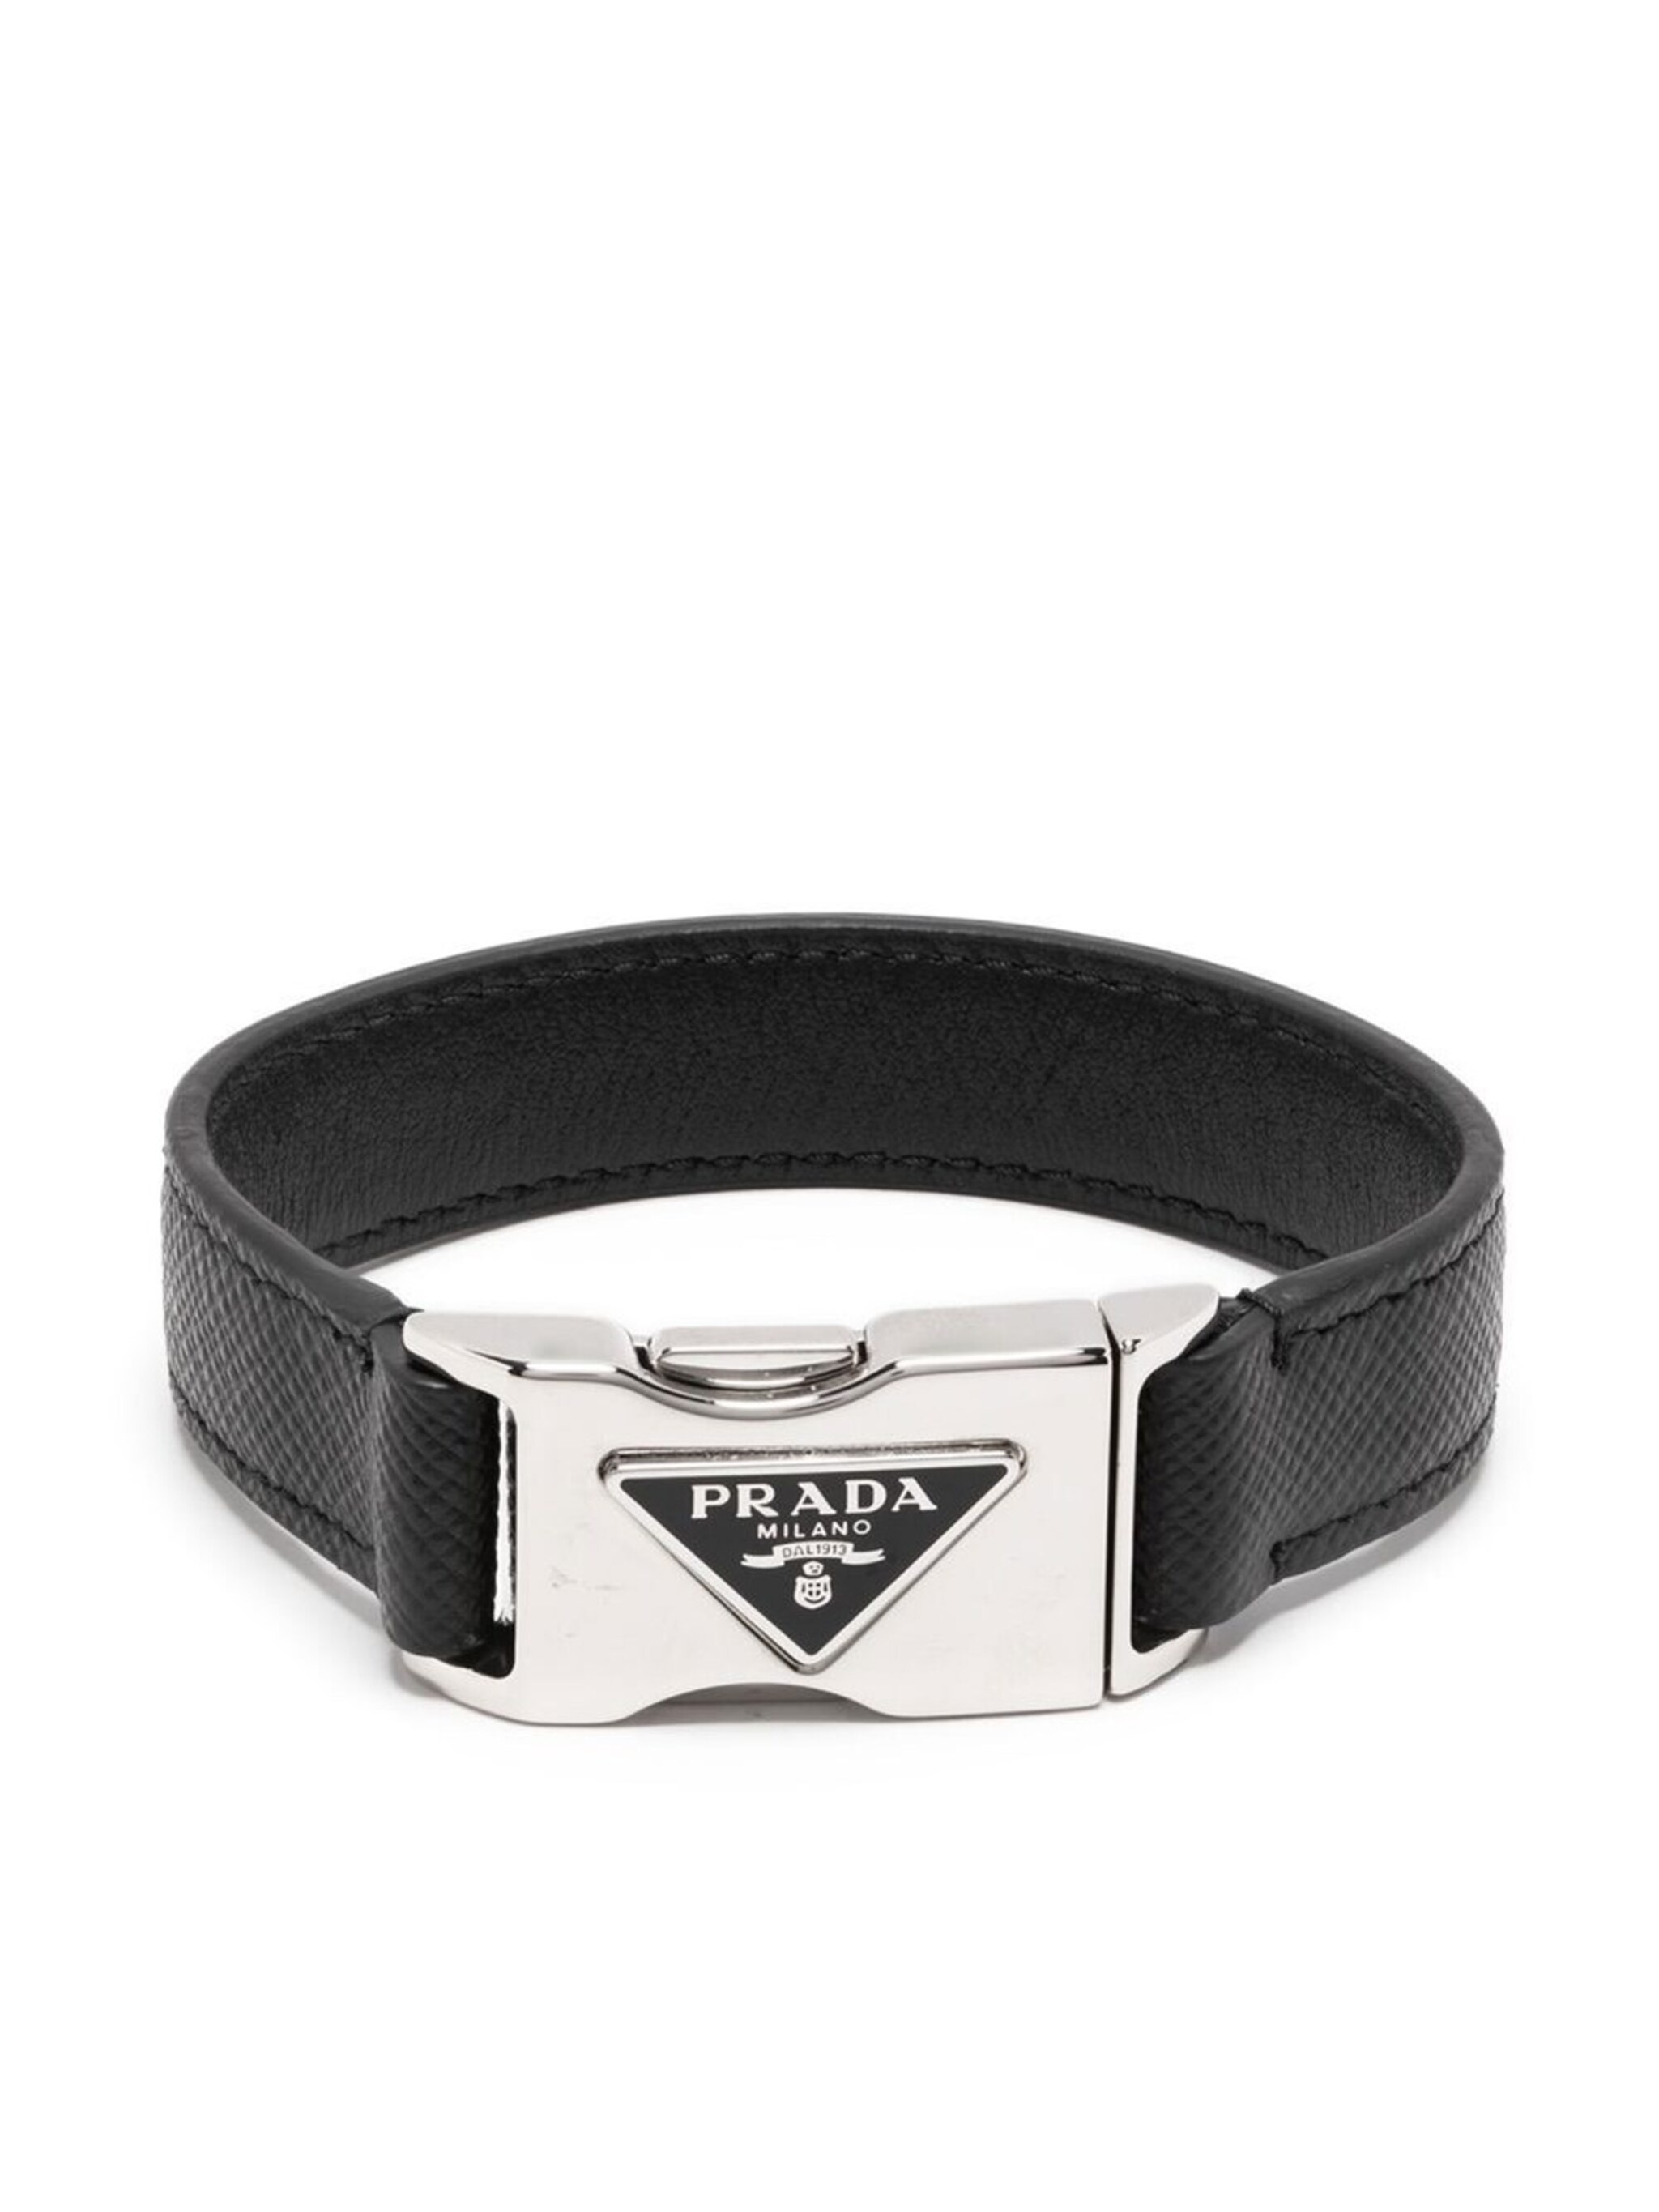 Saffiano leather bracelet - 1